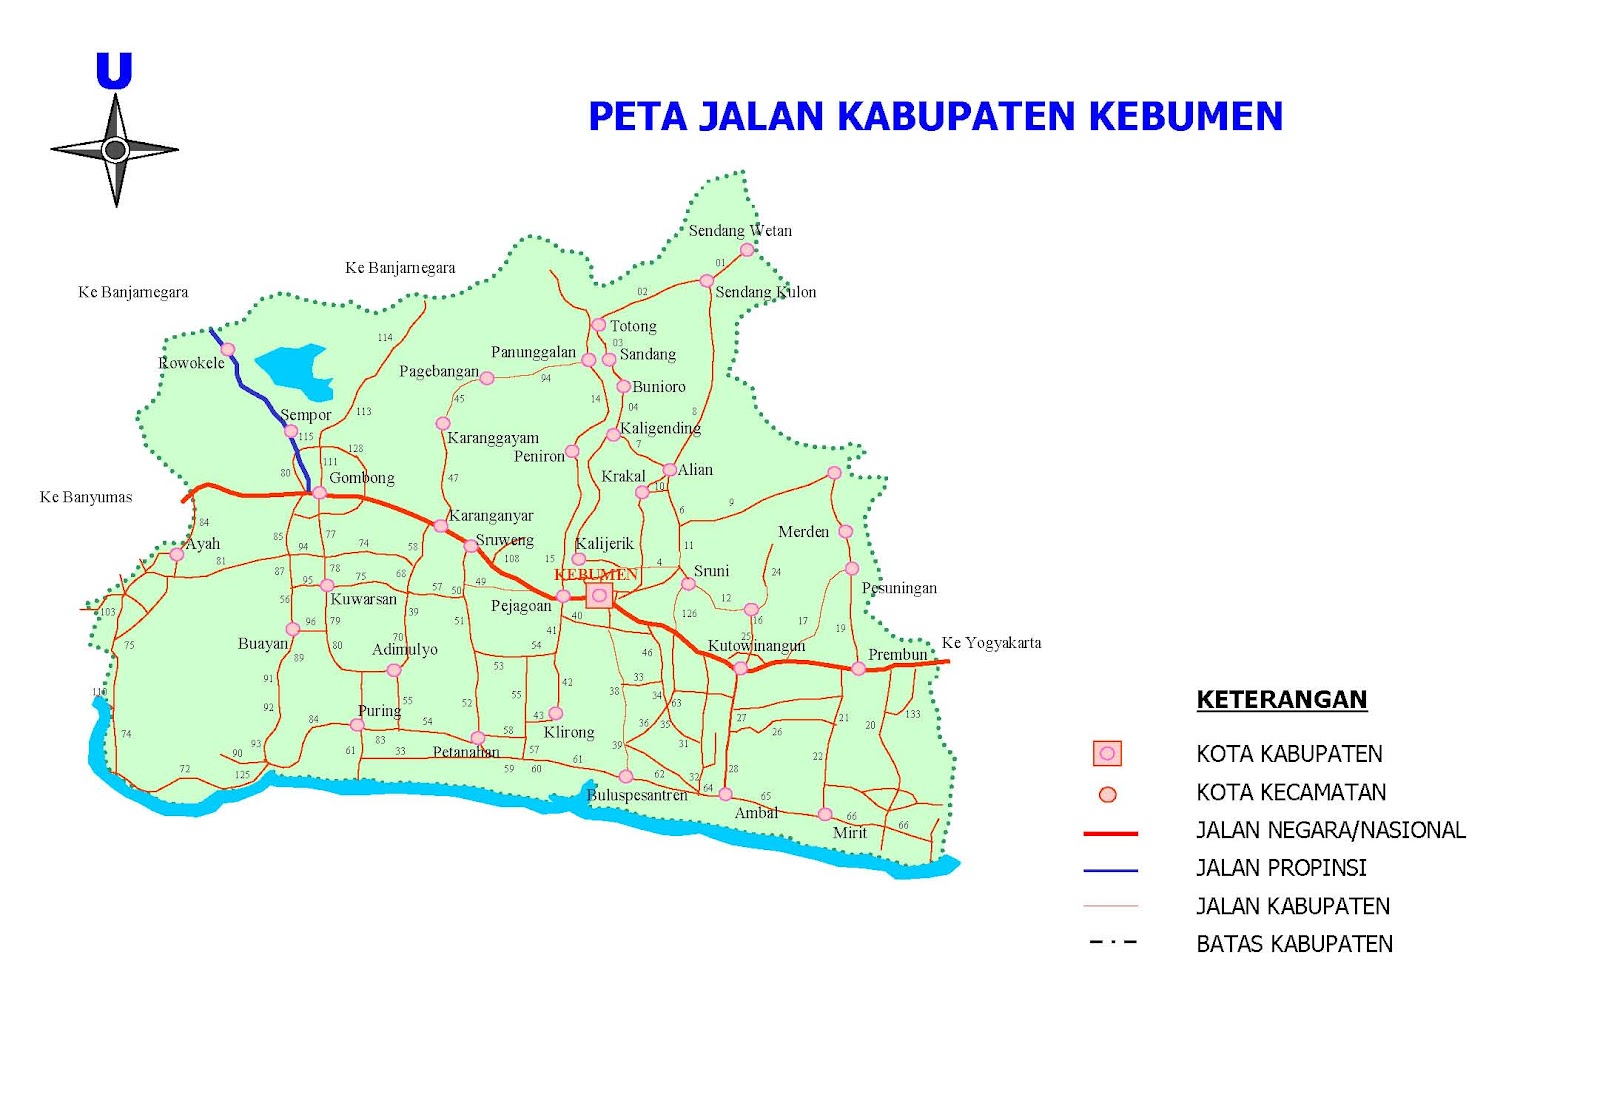  Peta  Kota Peta  Kabupaten Kebumen 